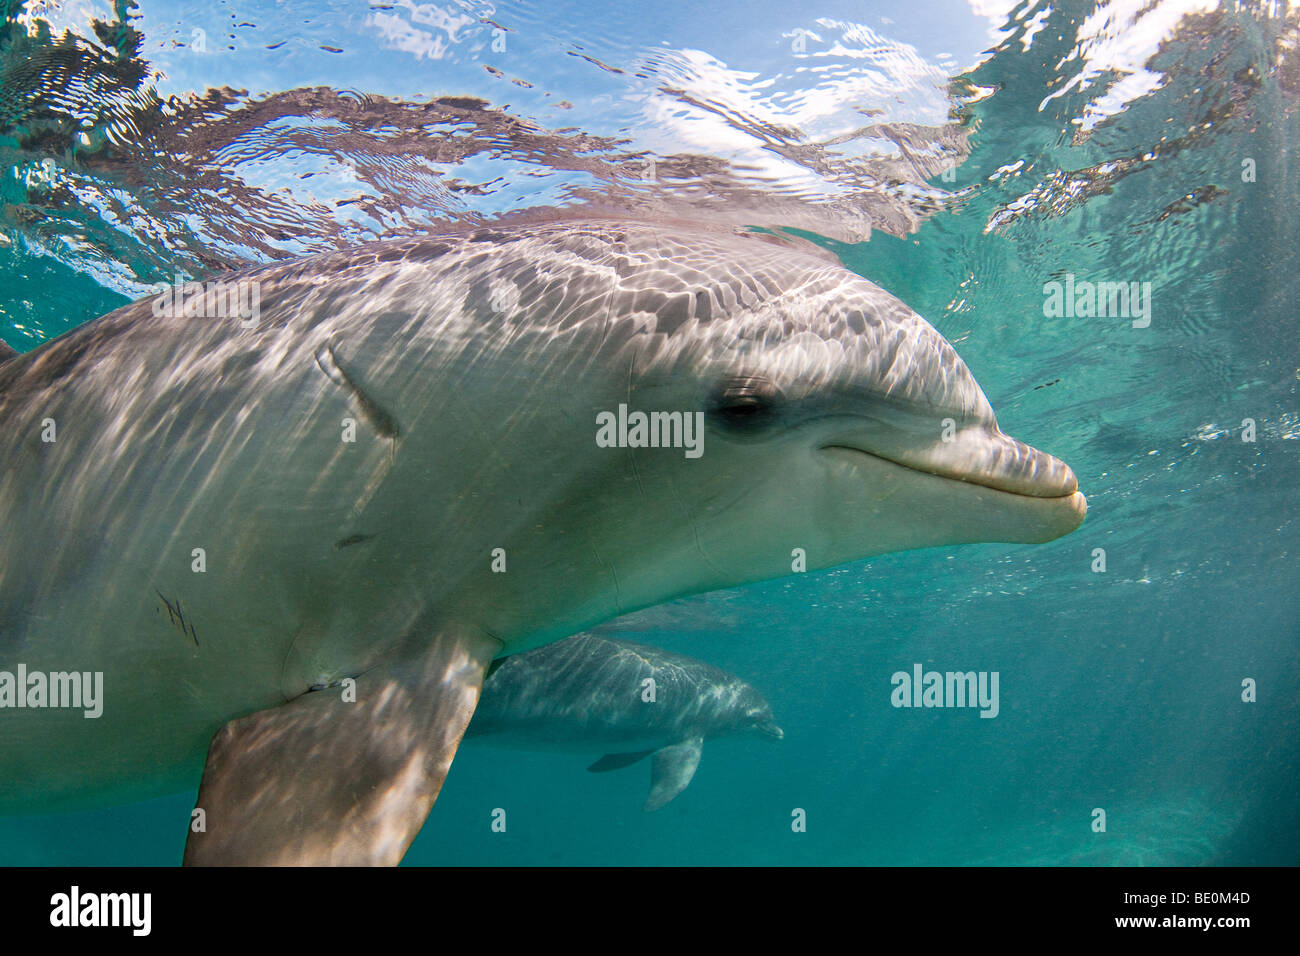 Atlantic Delfín mular, Tursiops truncatus, Curazao, Antillas Neerlandesas, del Caribe. Foto de stock